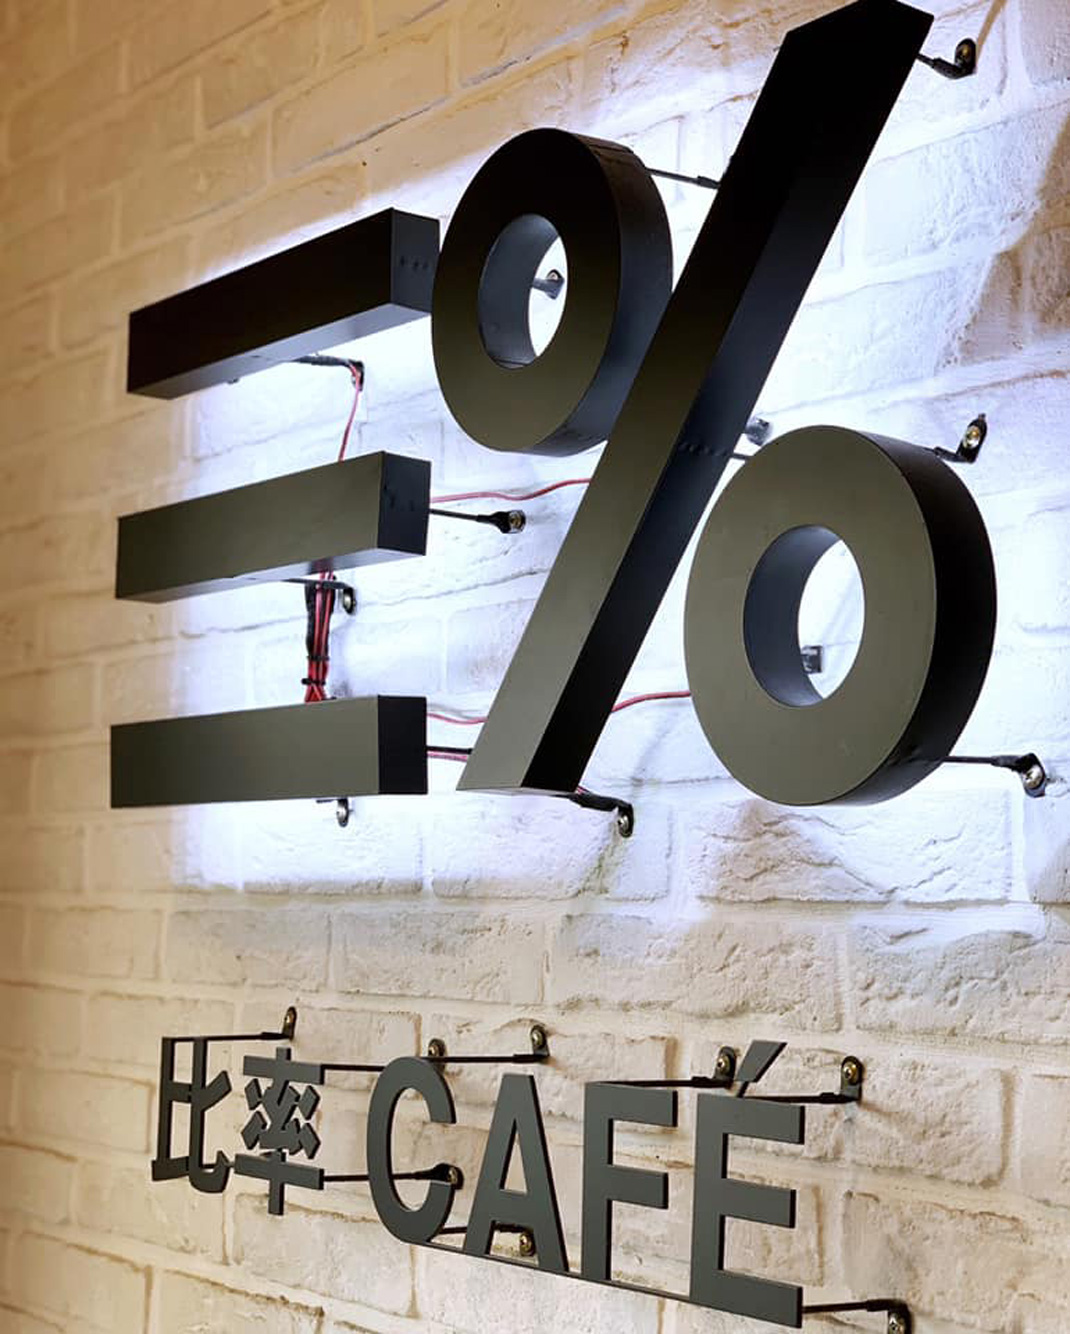 三%比率咖啡店 咖啡店 店招 灯箱 手提袋 标志设计 logo设计 vi设计 空间设计